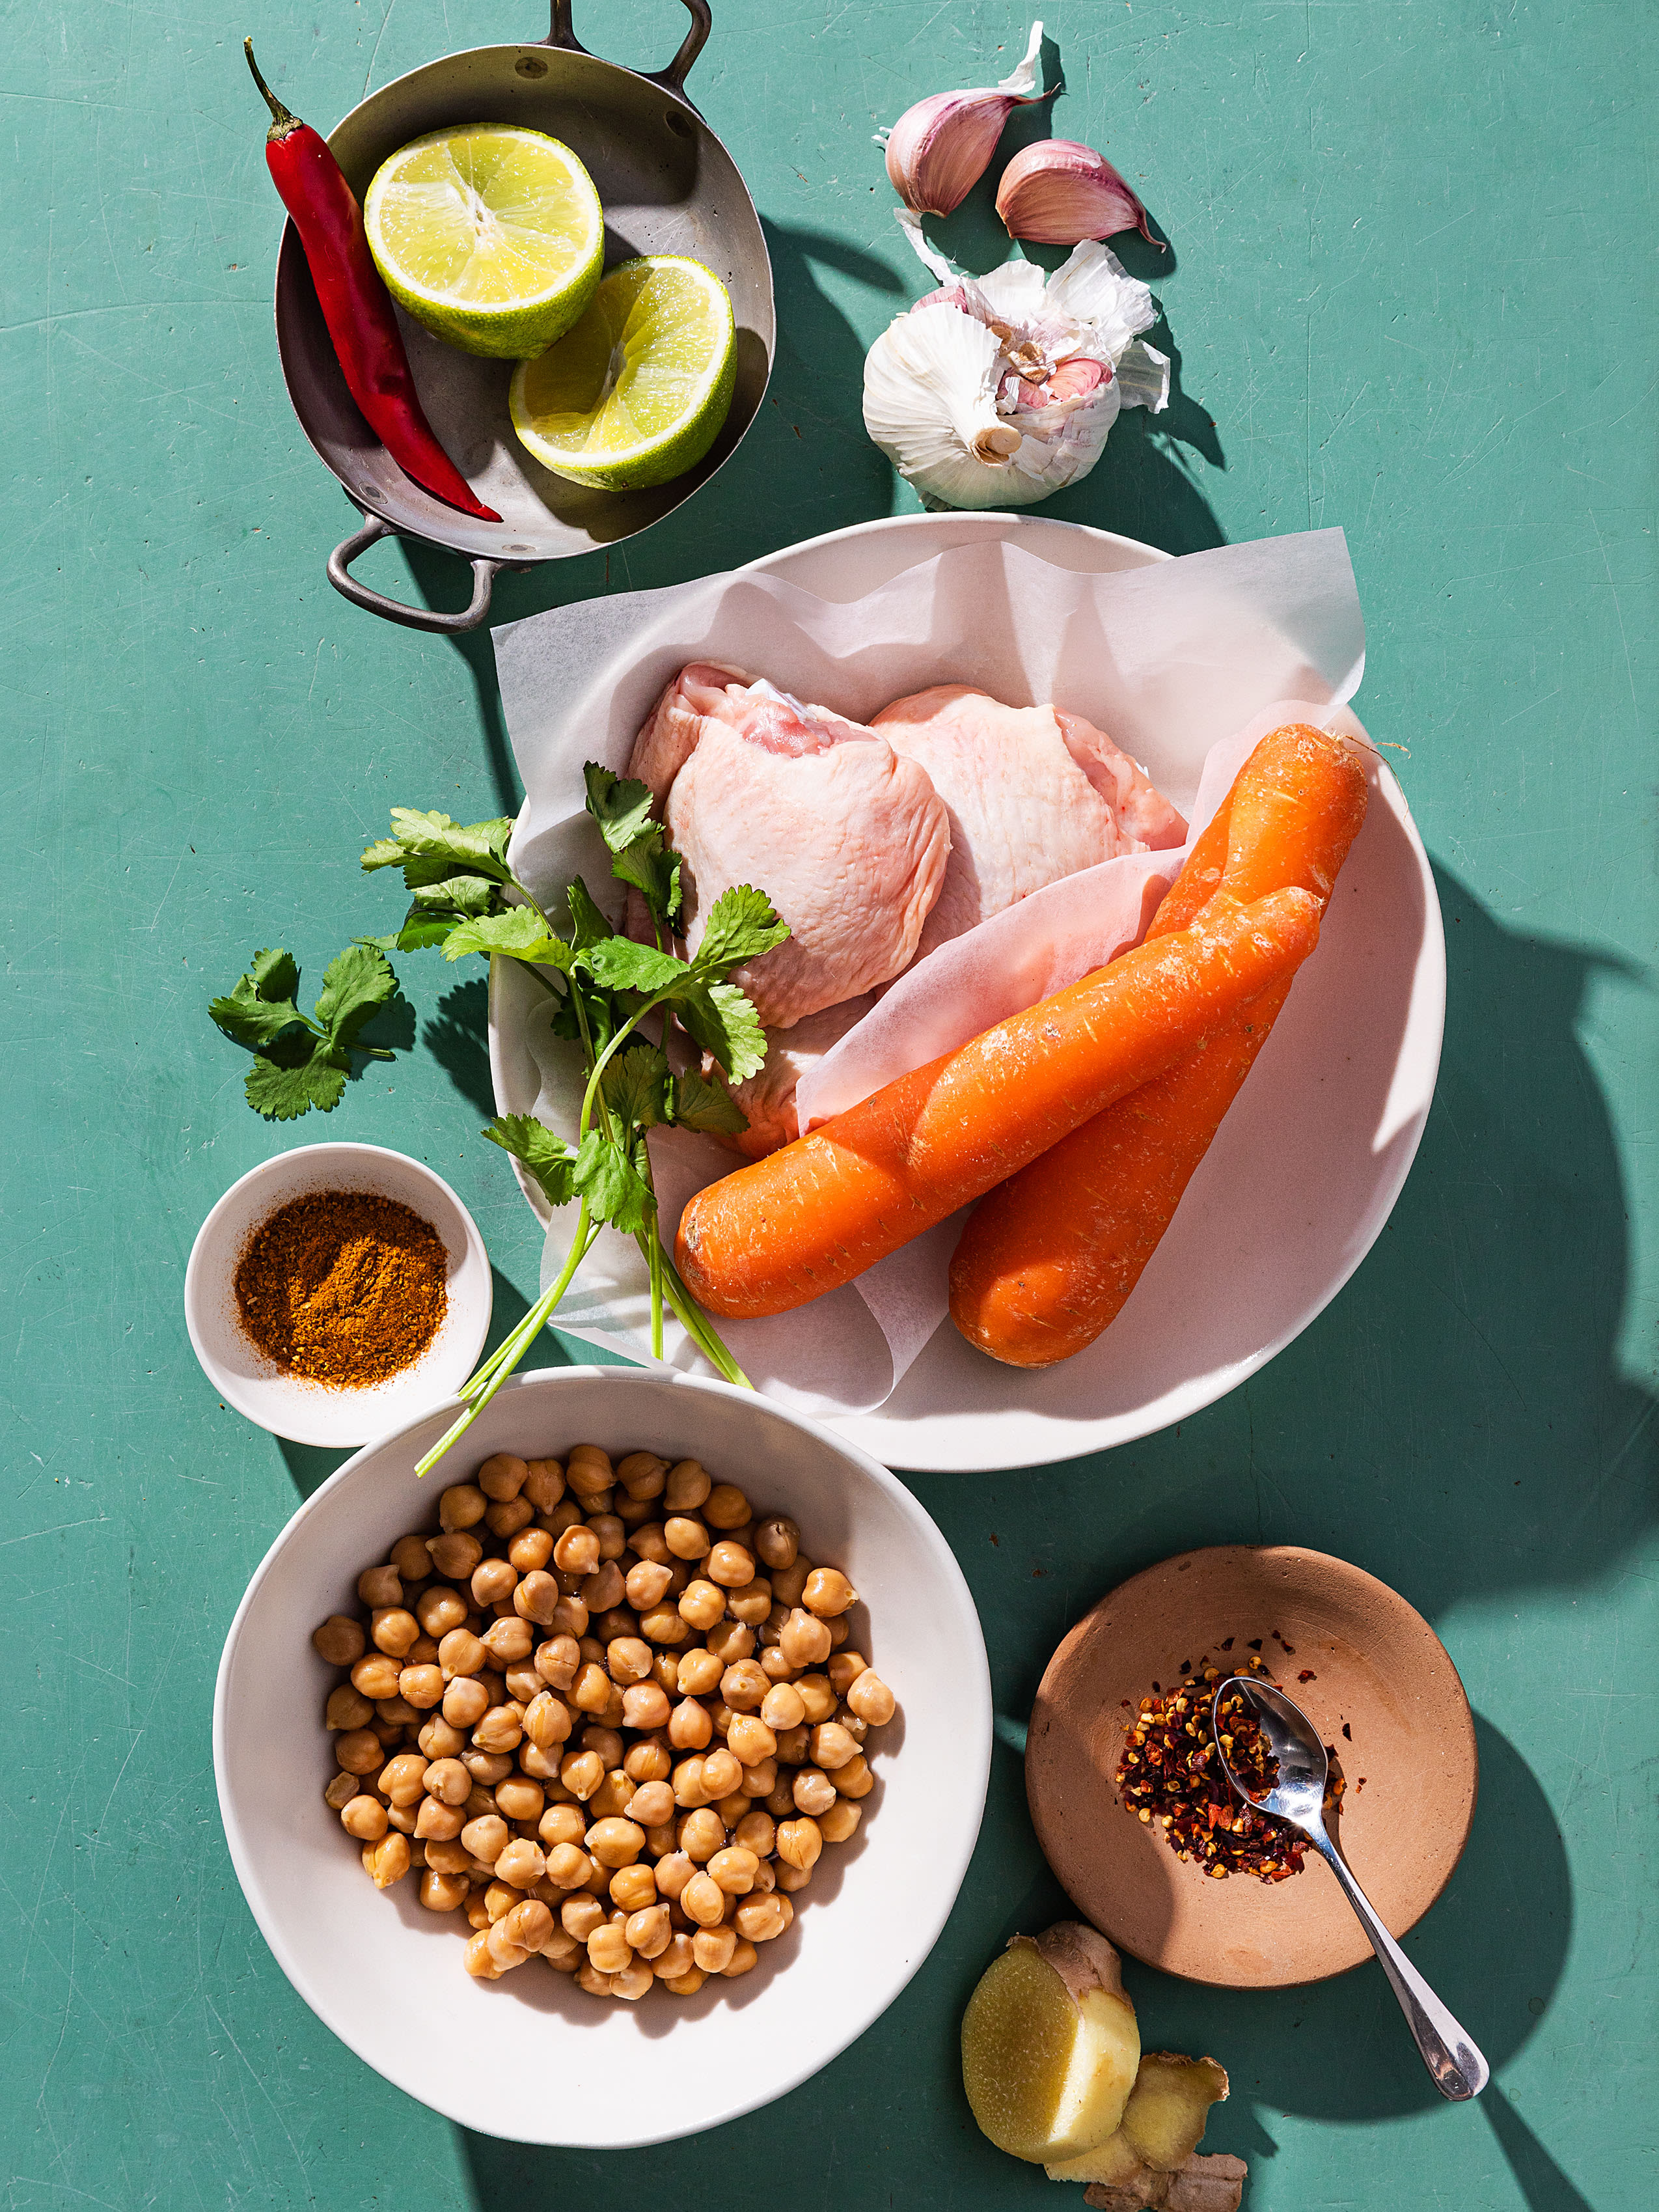 Wuerziges Huehnchen mit Karotten, Kichererbsen und gruenem Chili-Salat Rezept